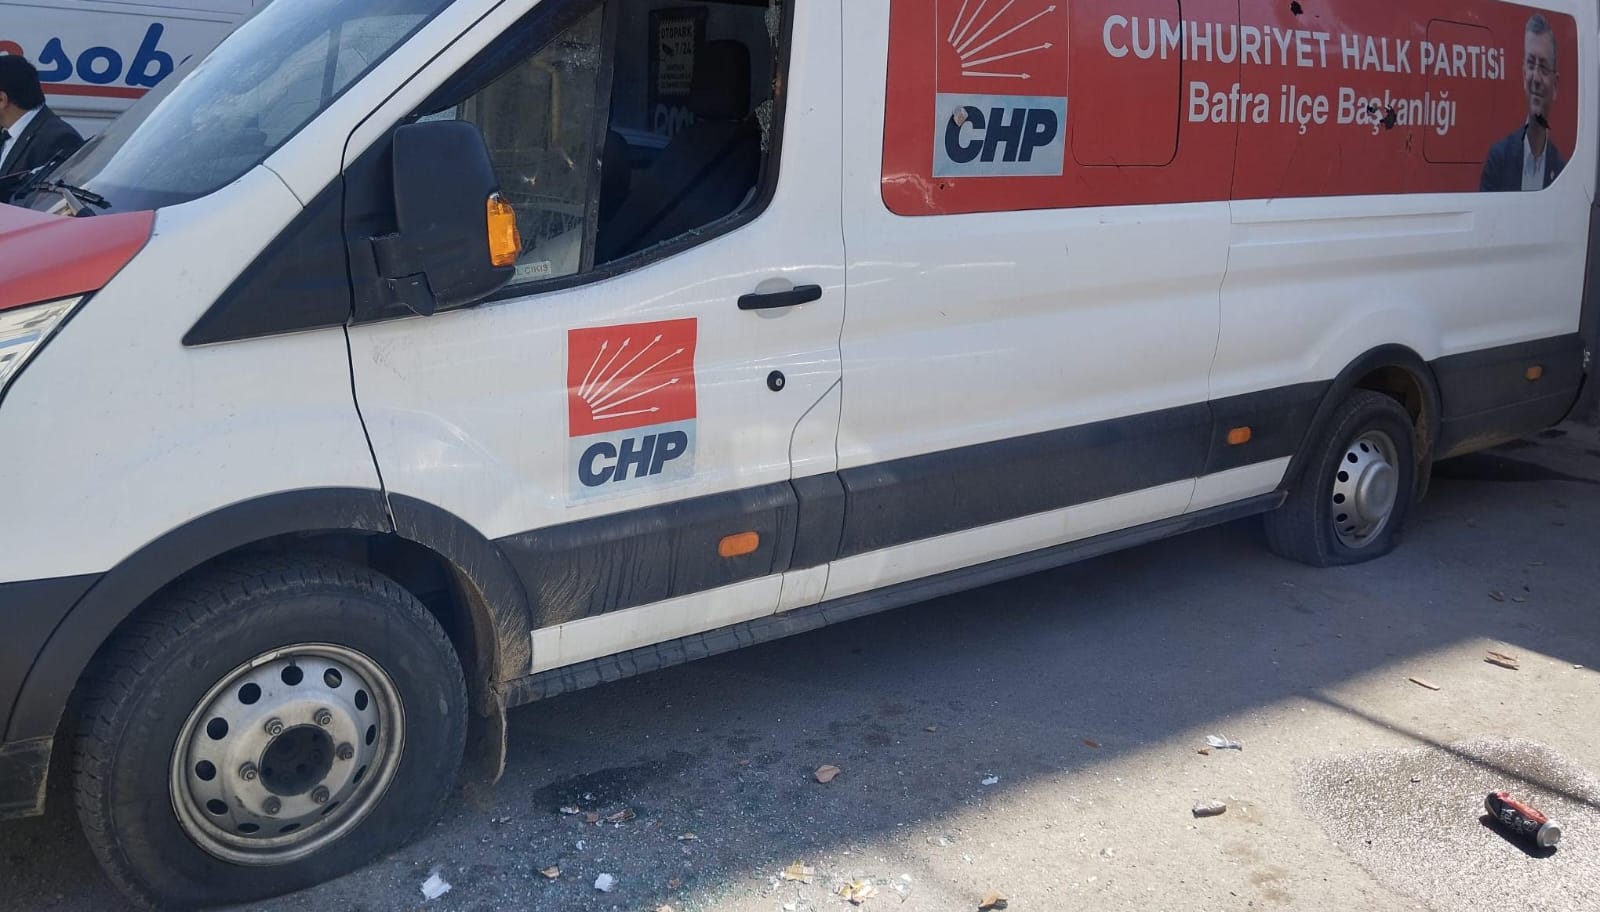 Bafra’da CHP Aracına Saldırı